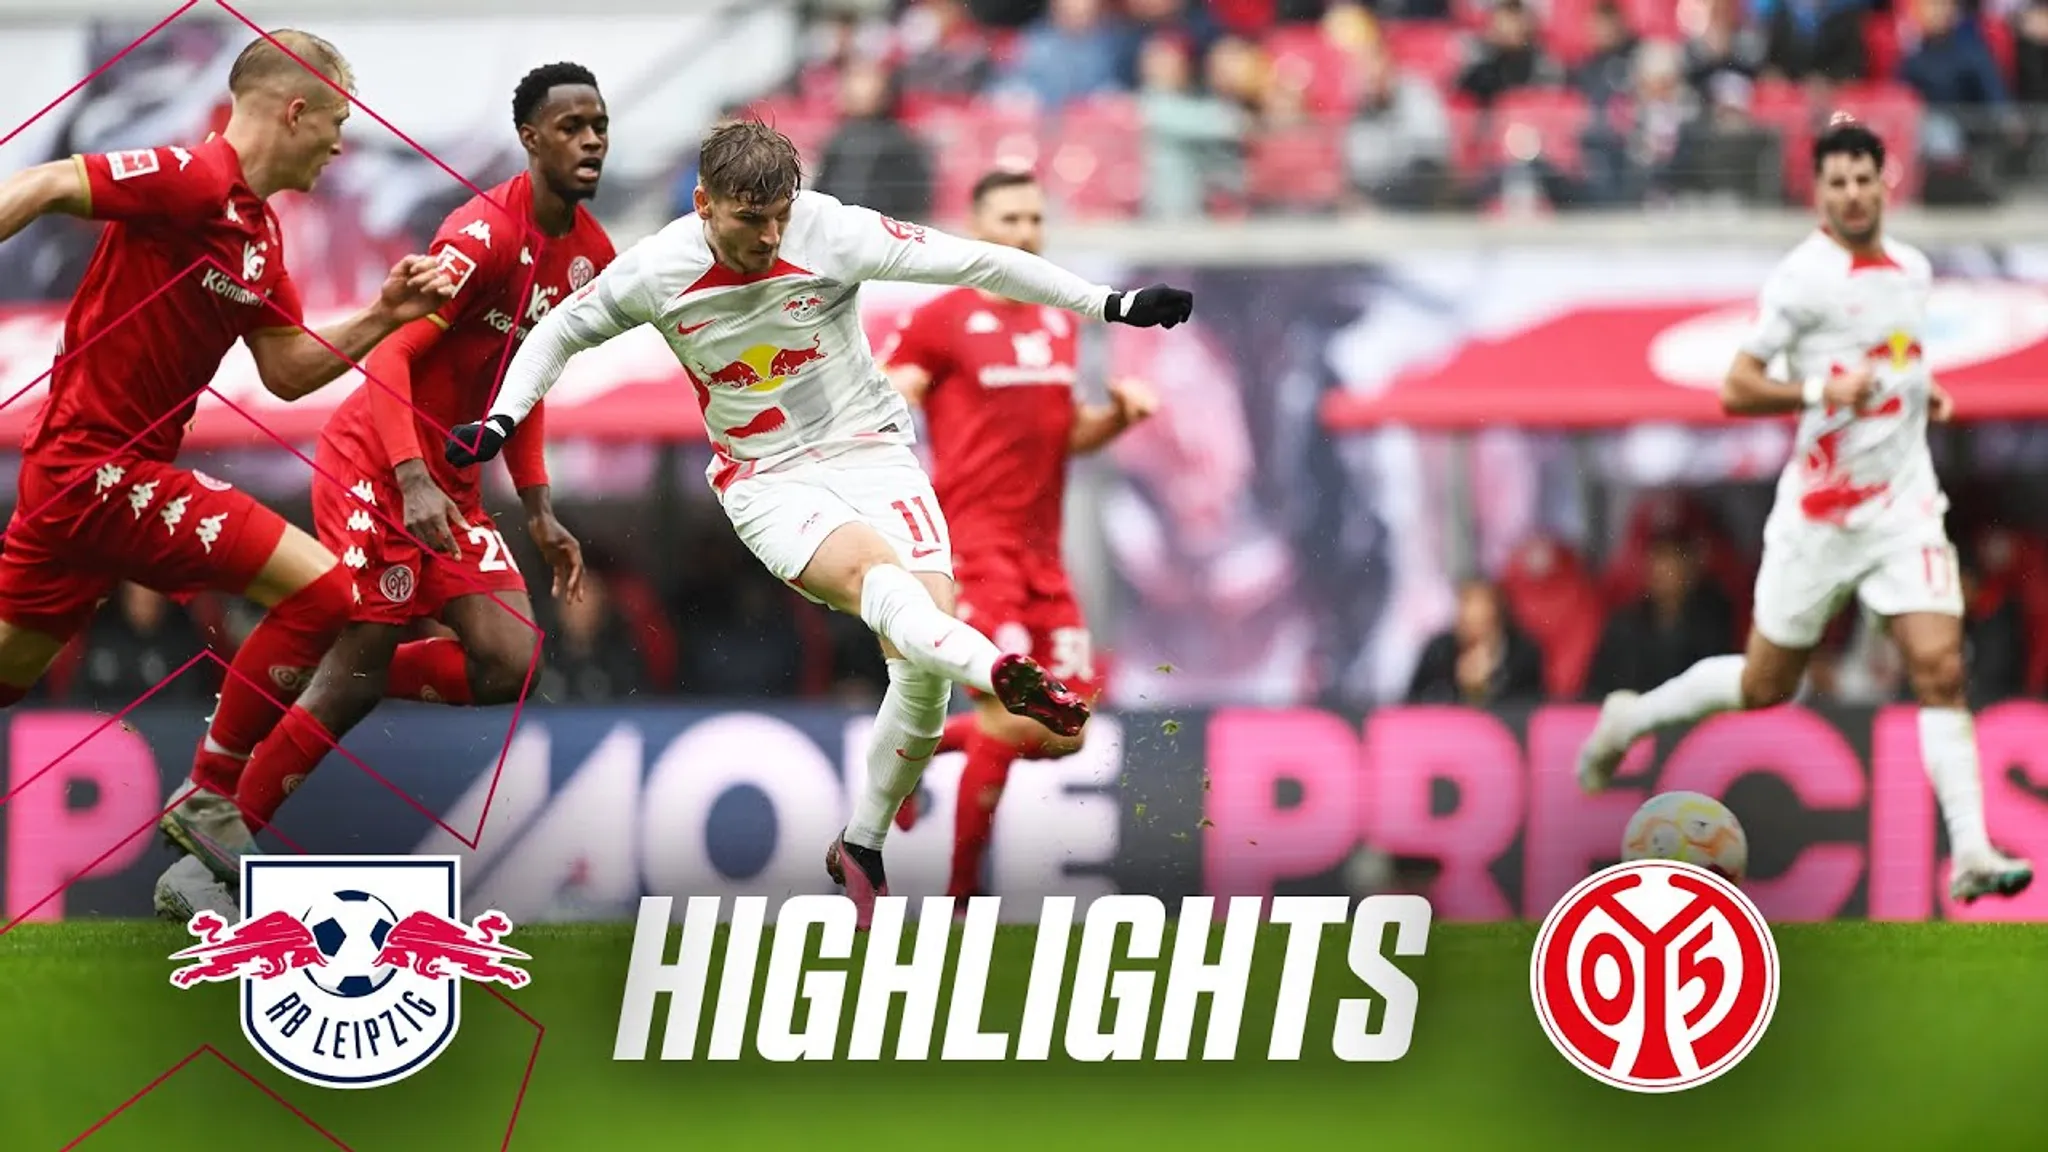 Highlights des Spiels RB Leipzig gegen Mainz 05